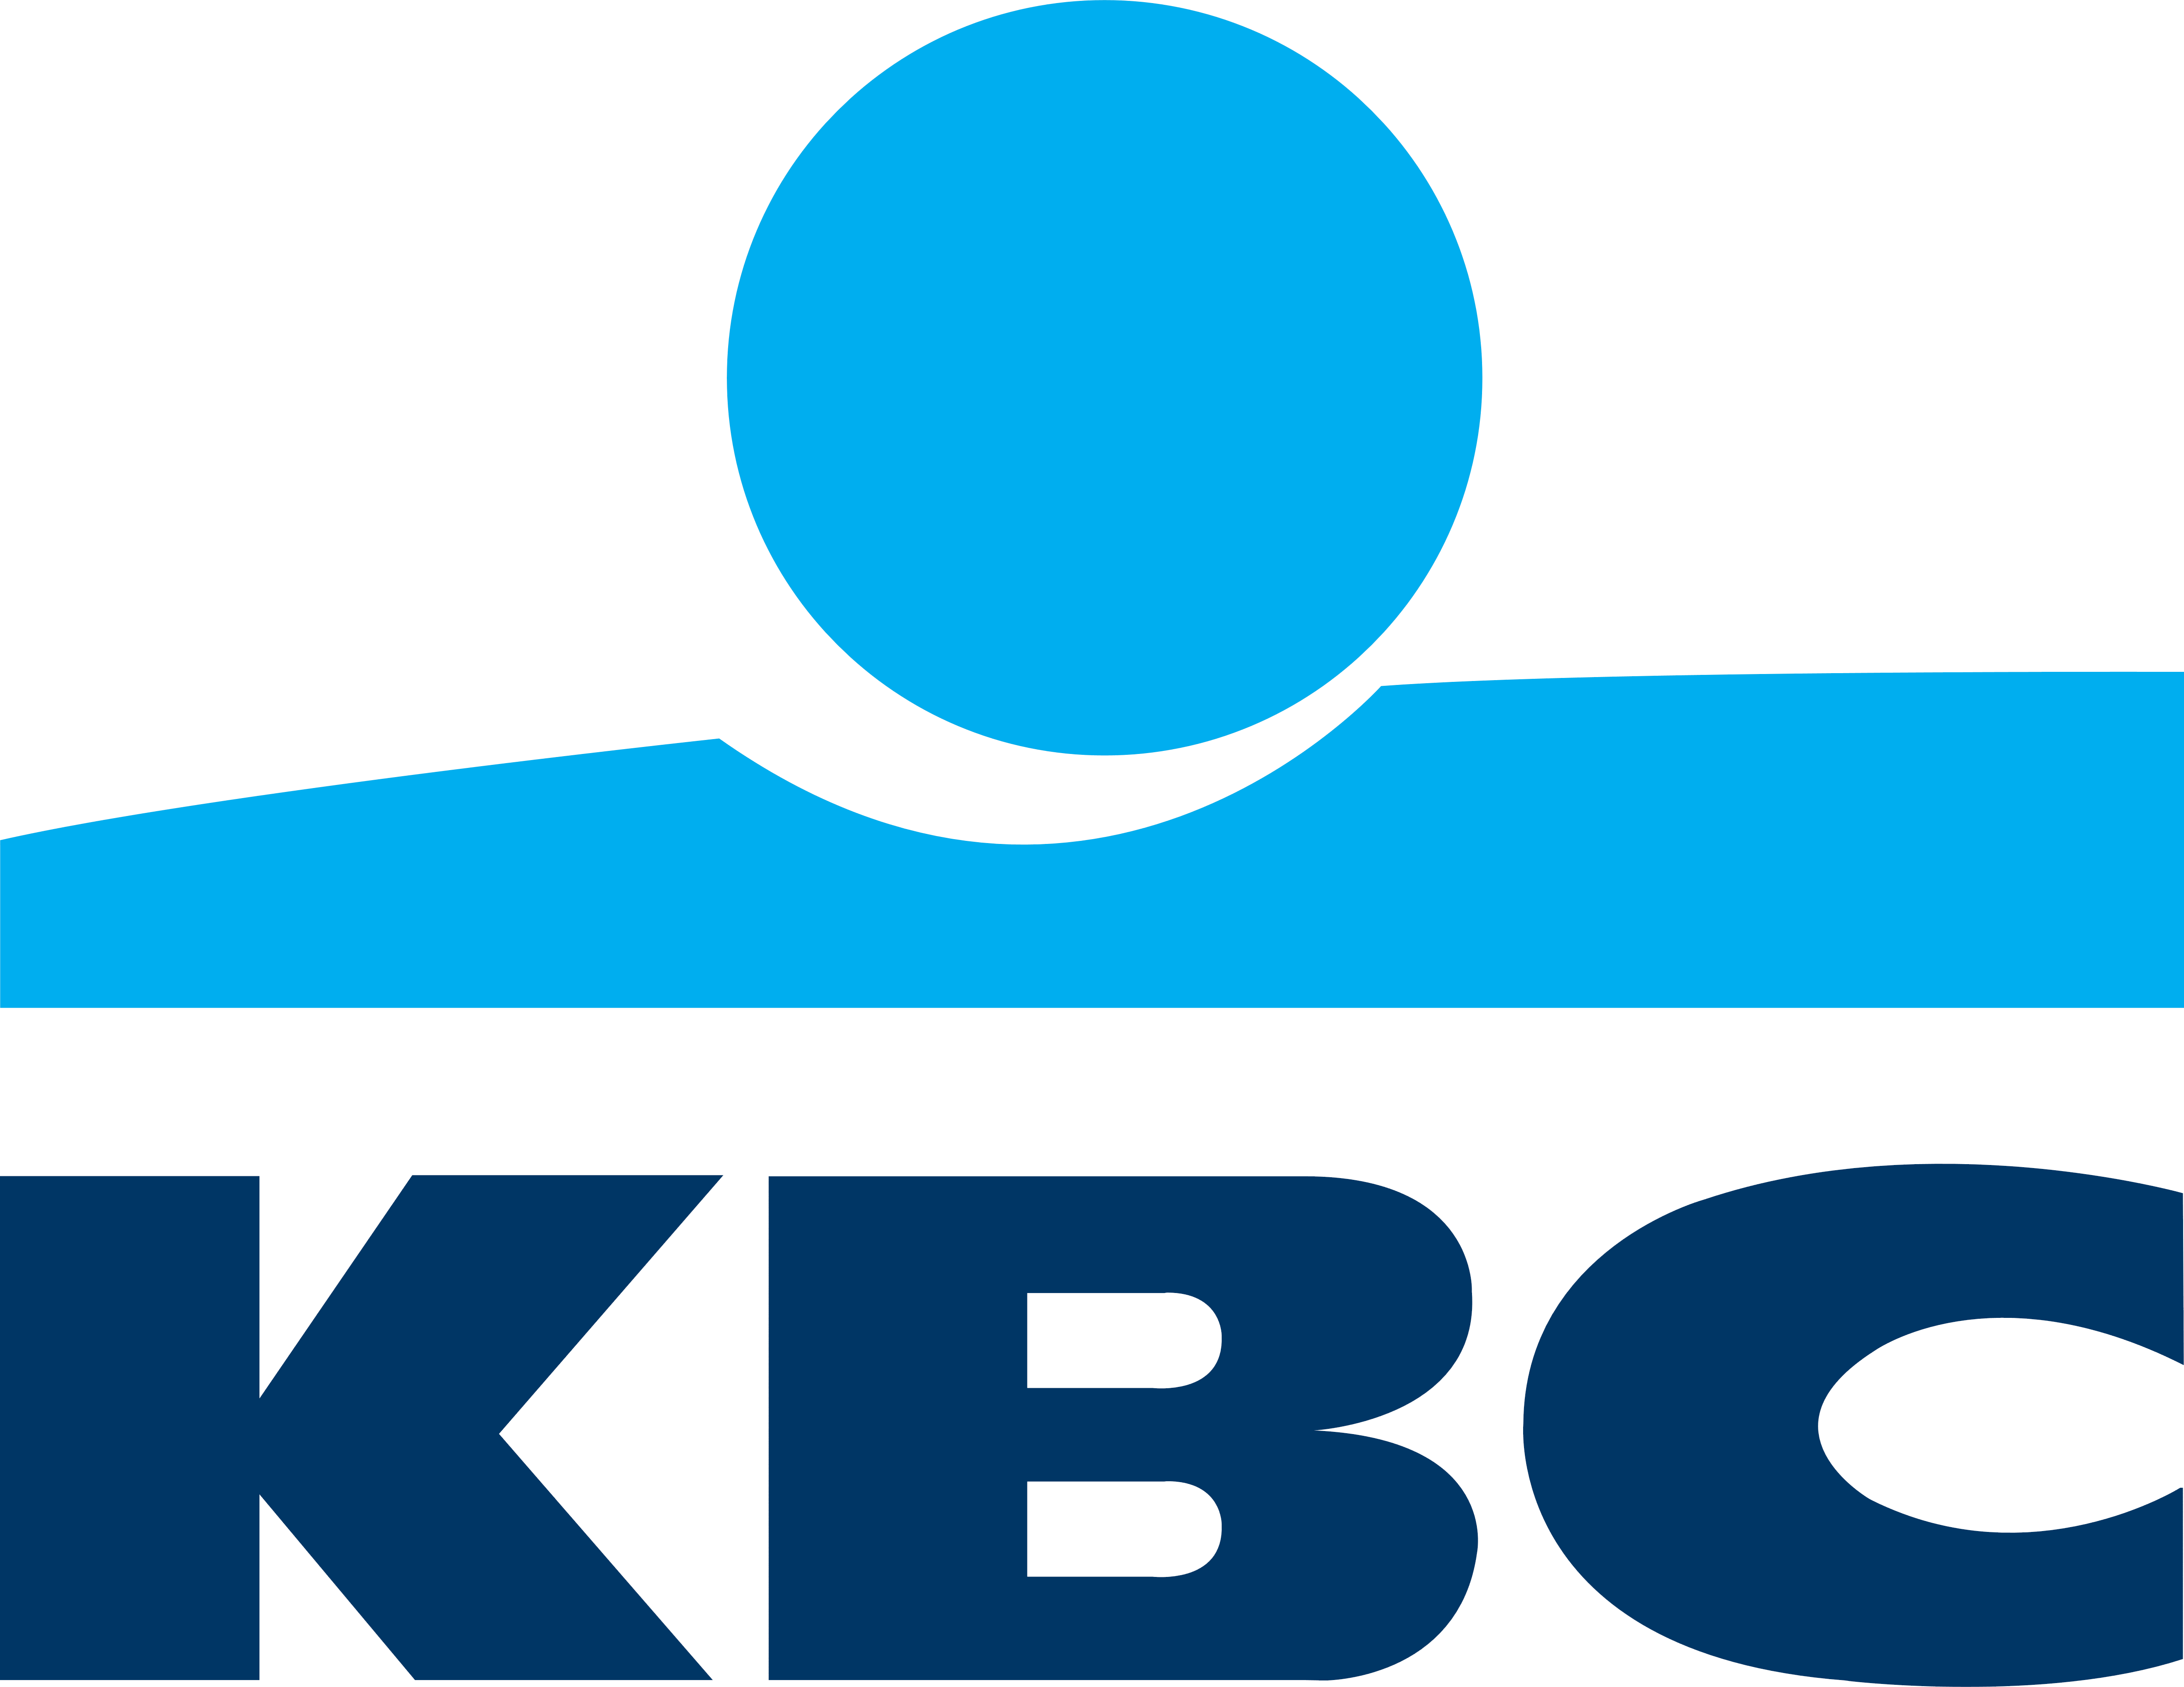 KBC_logo